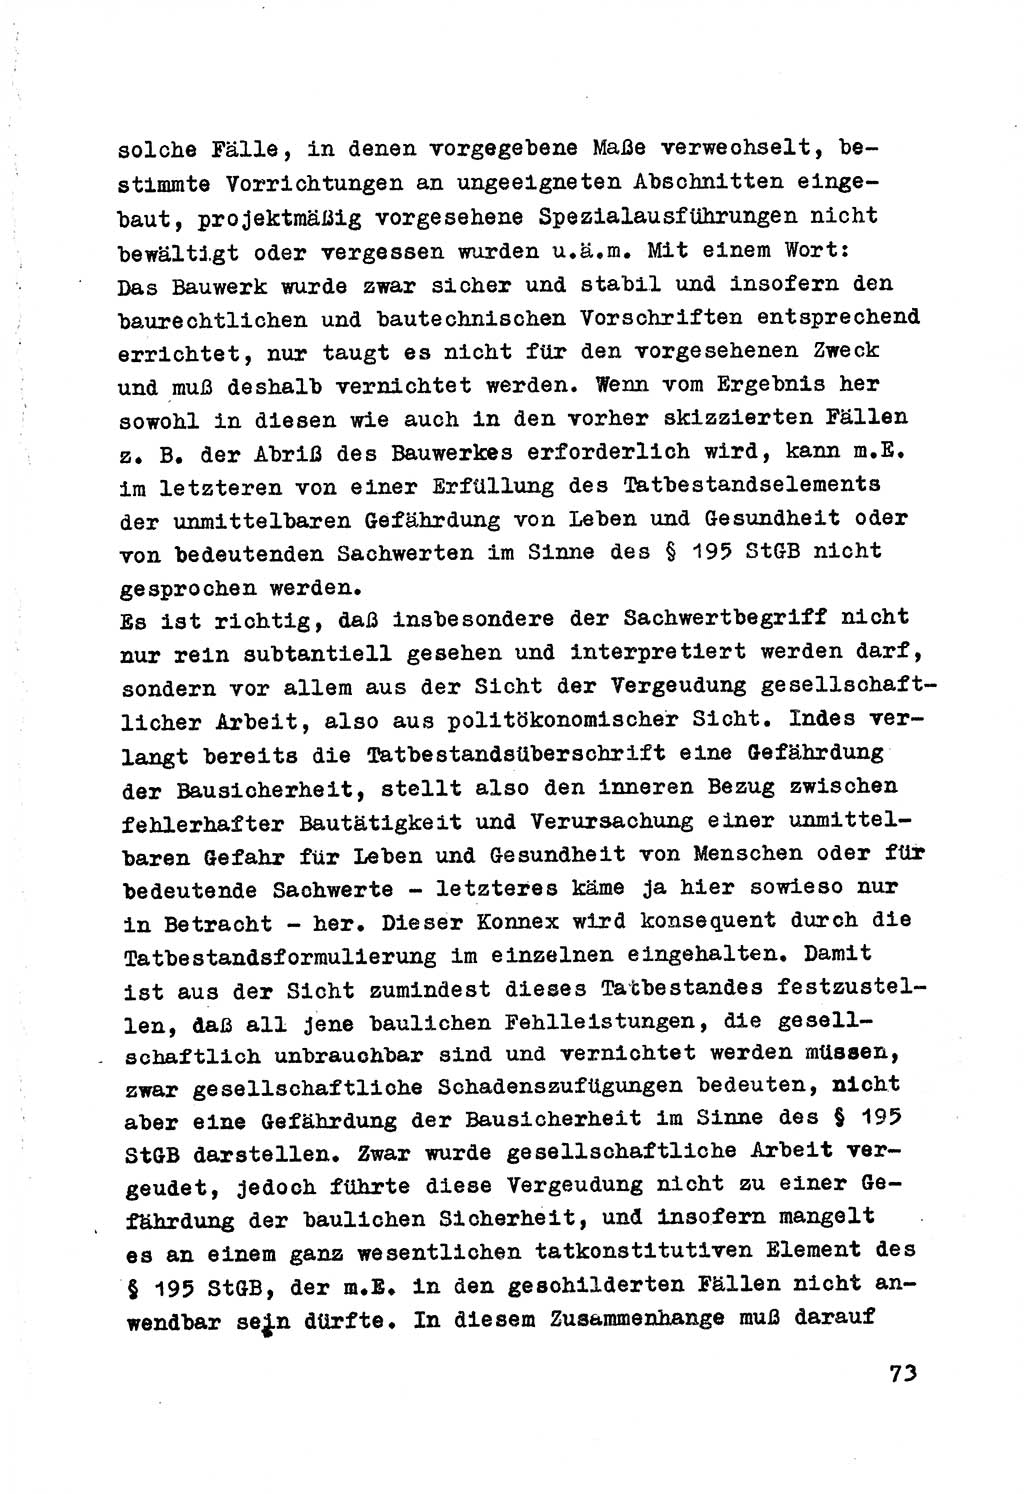 Strafrecht der DDR (Deutsche Demokratische Republik), Besonderer Teil, Lehrmaterial, Heft 7 1970, Seite 73 (Strafr. DDR BT Lehrmat. H. 7 1970, S. 73)